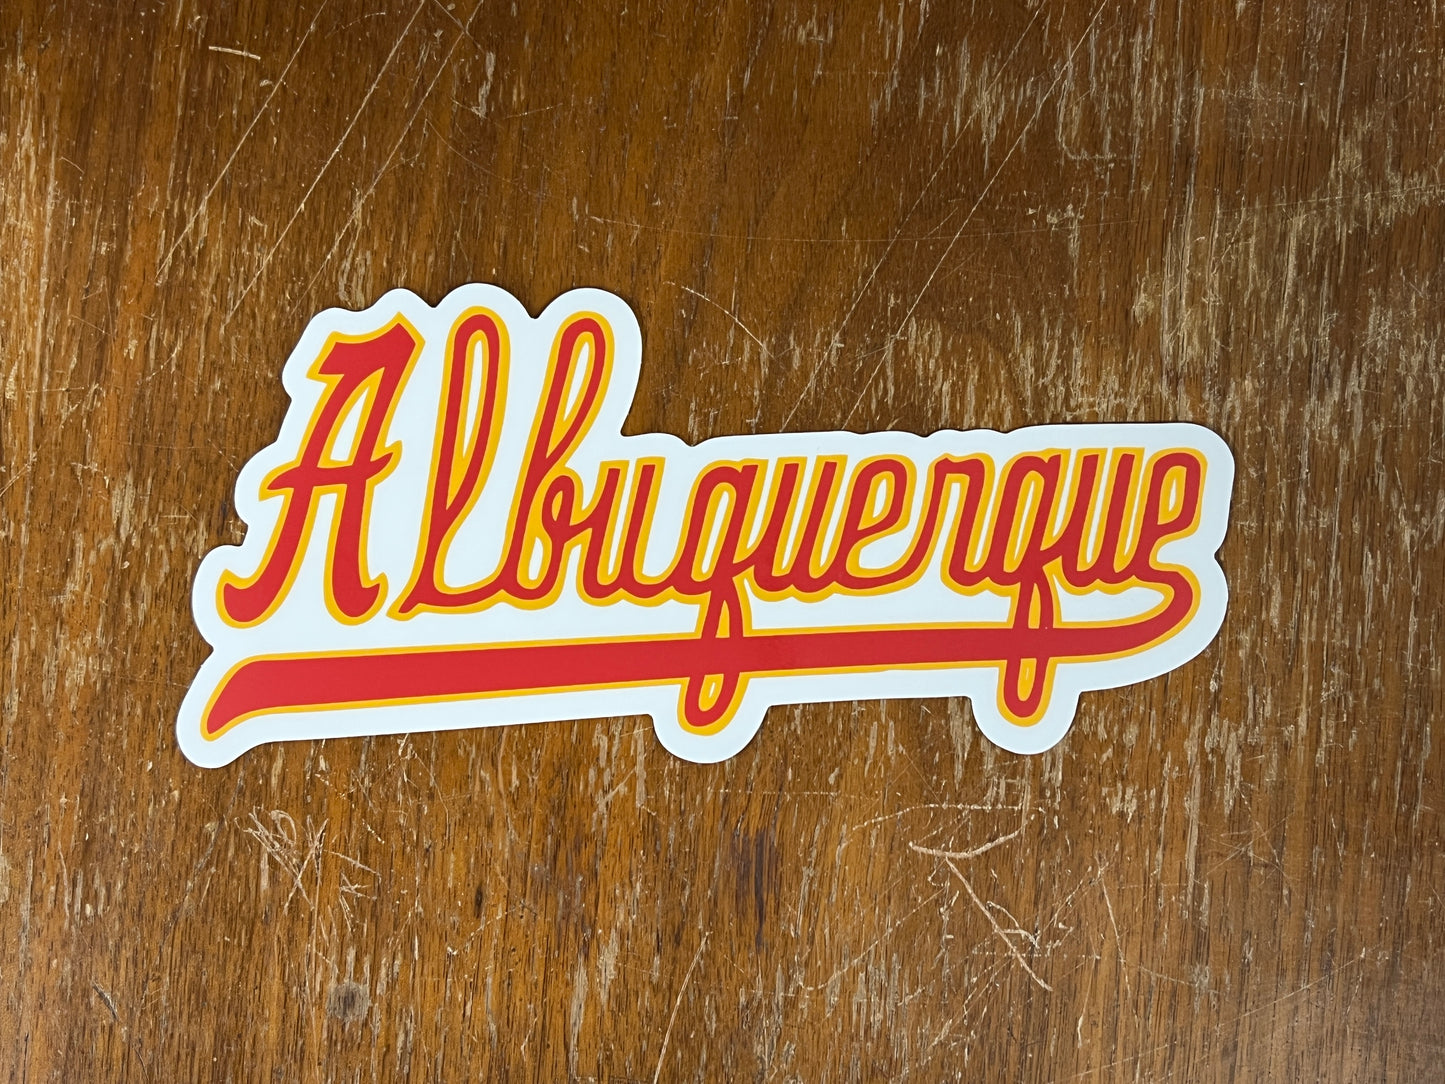 Albuquerque Dukes Stickers